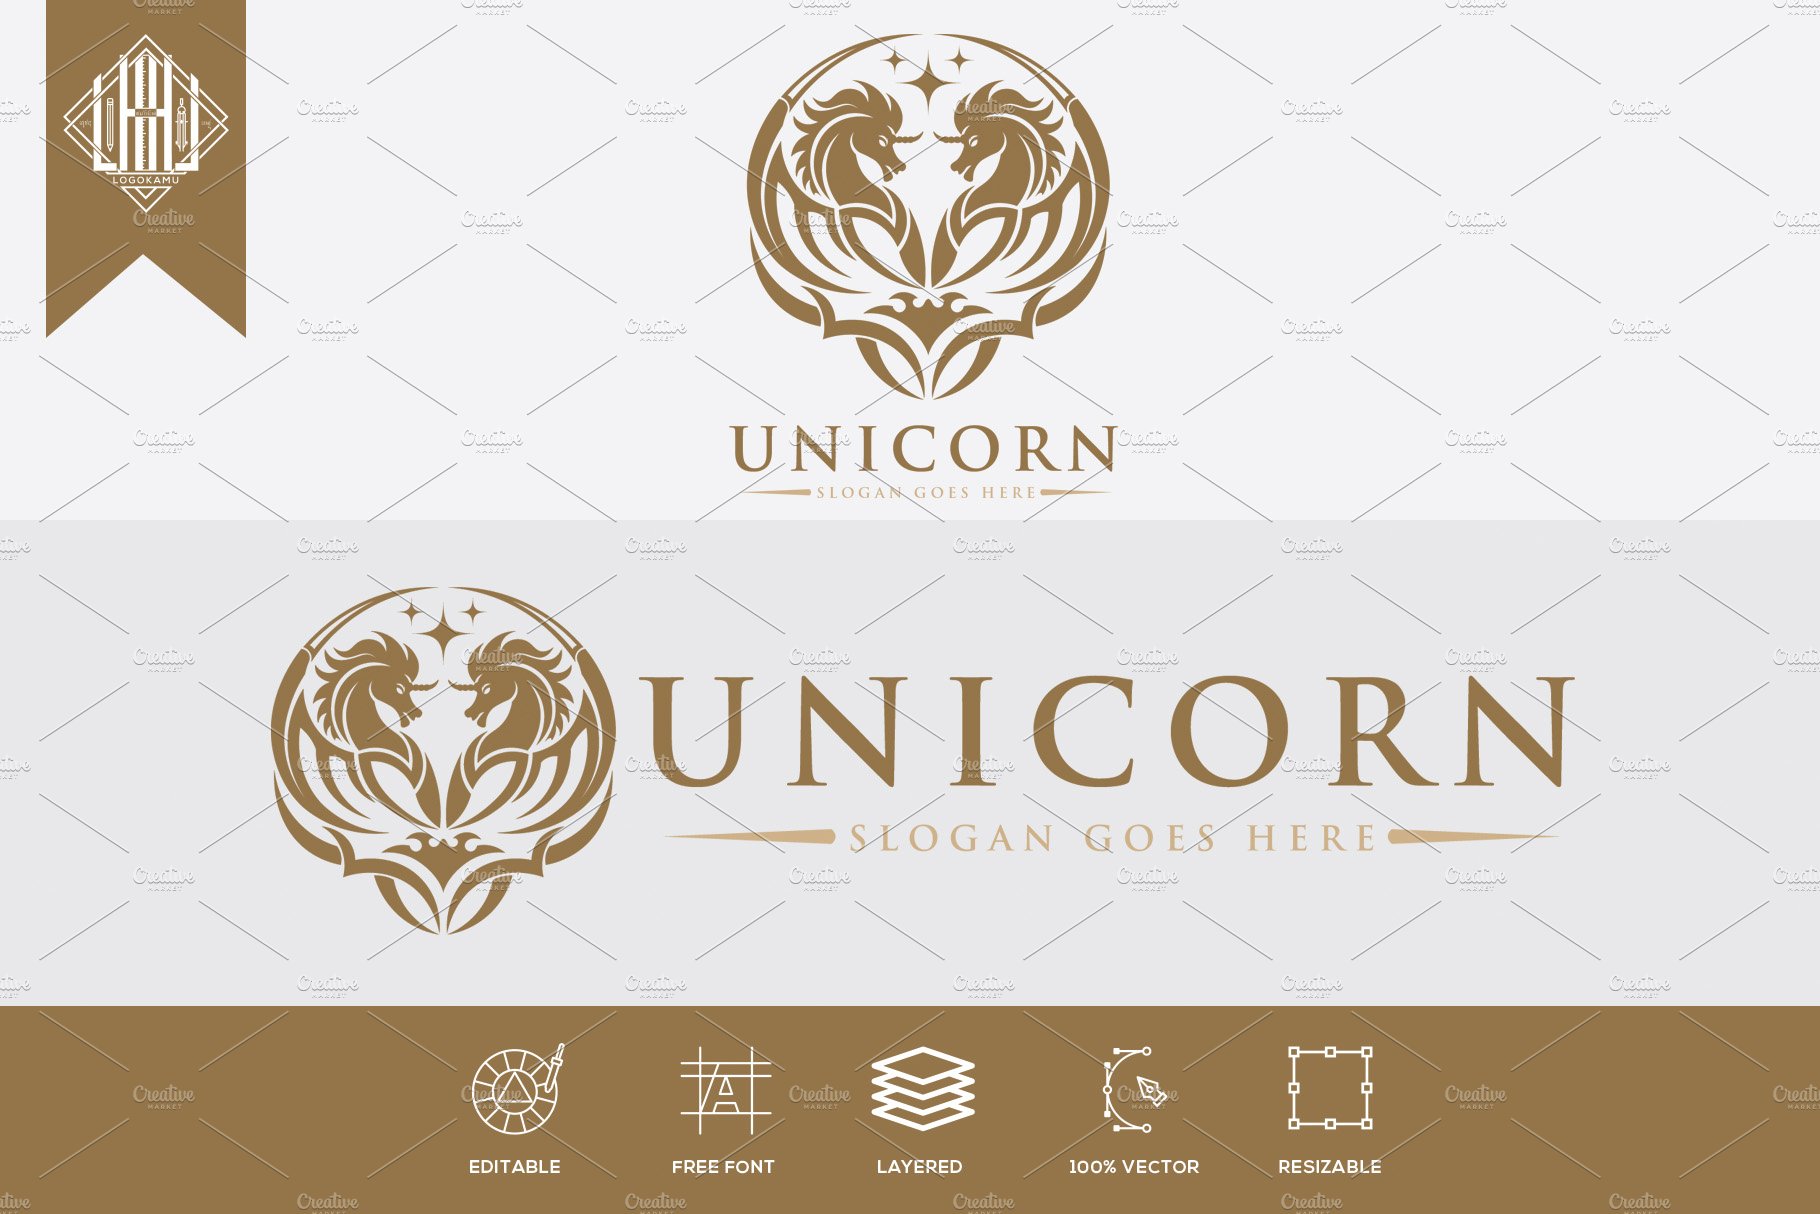 Unicorn Logo cover image.